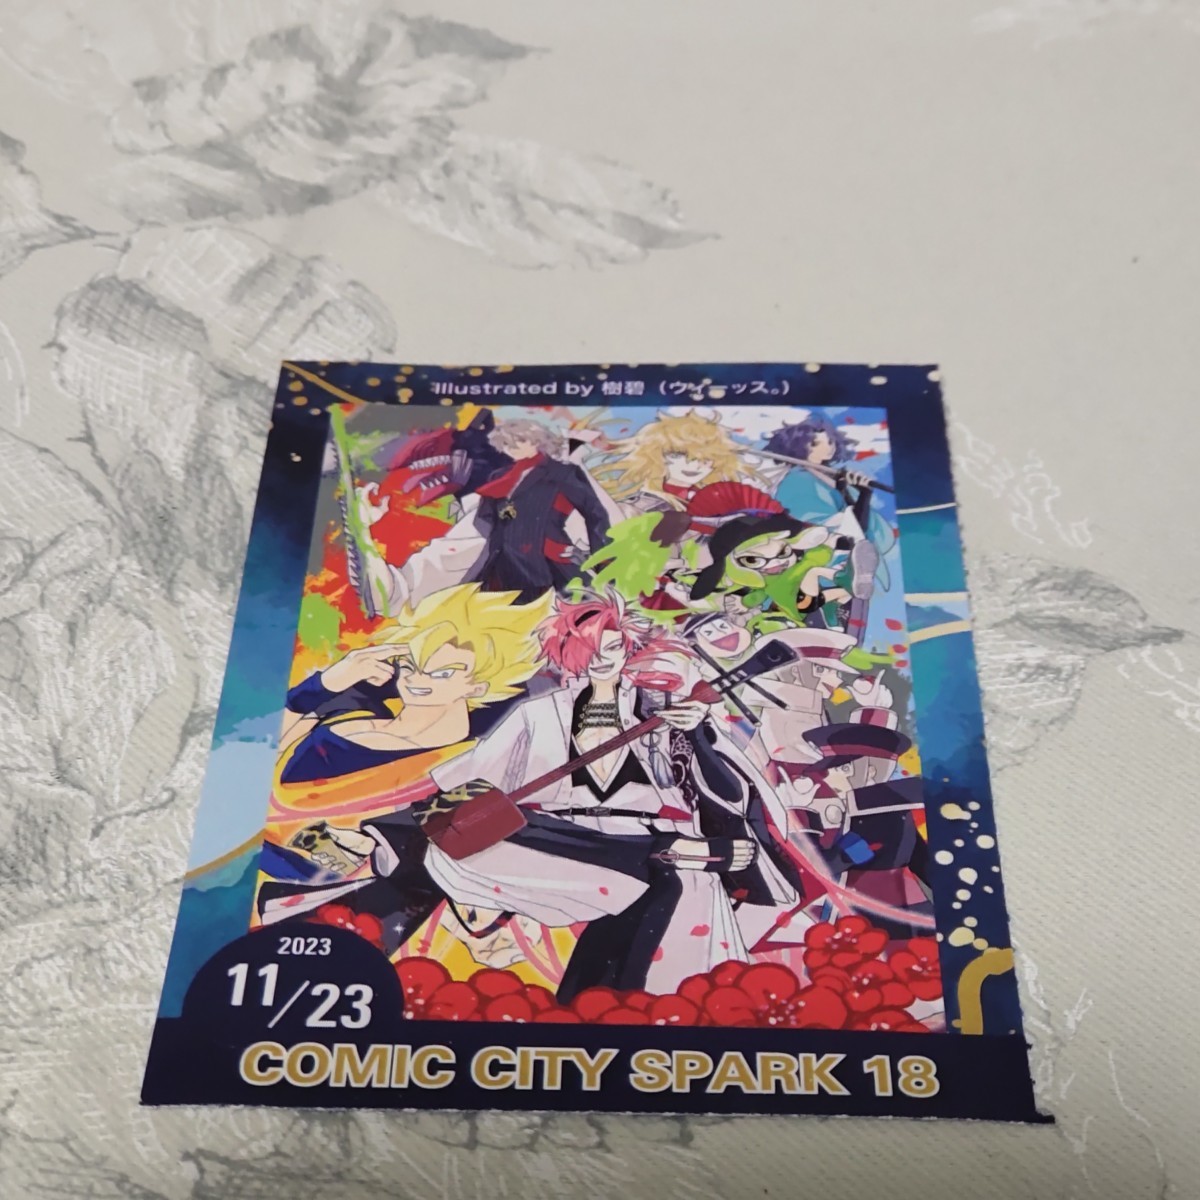 11/23 東京 COMIC CITY SPARK 18 サークルチケットチケット _画像1